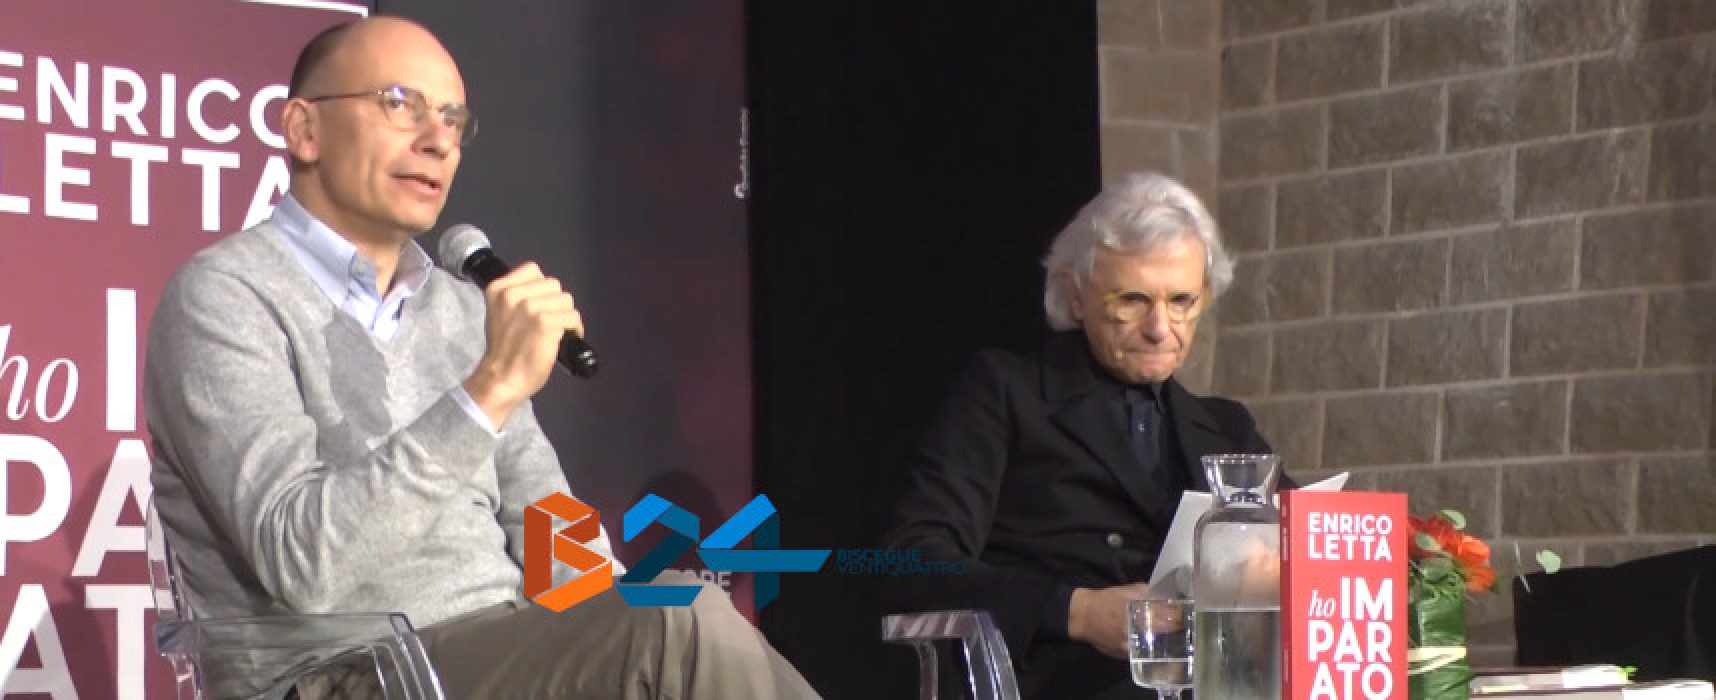 Enrico Letta alle Vecchie Segherie per la presentazione del libro “Ho imparato” / VIDEO